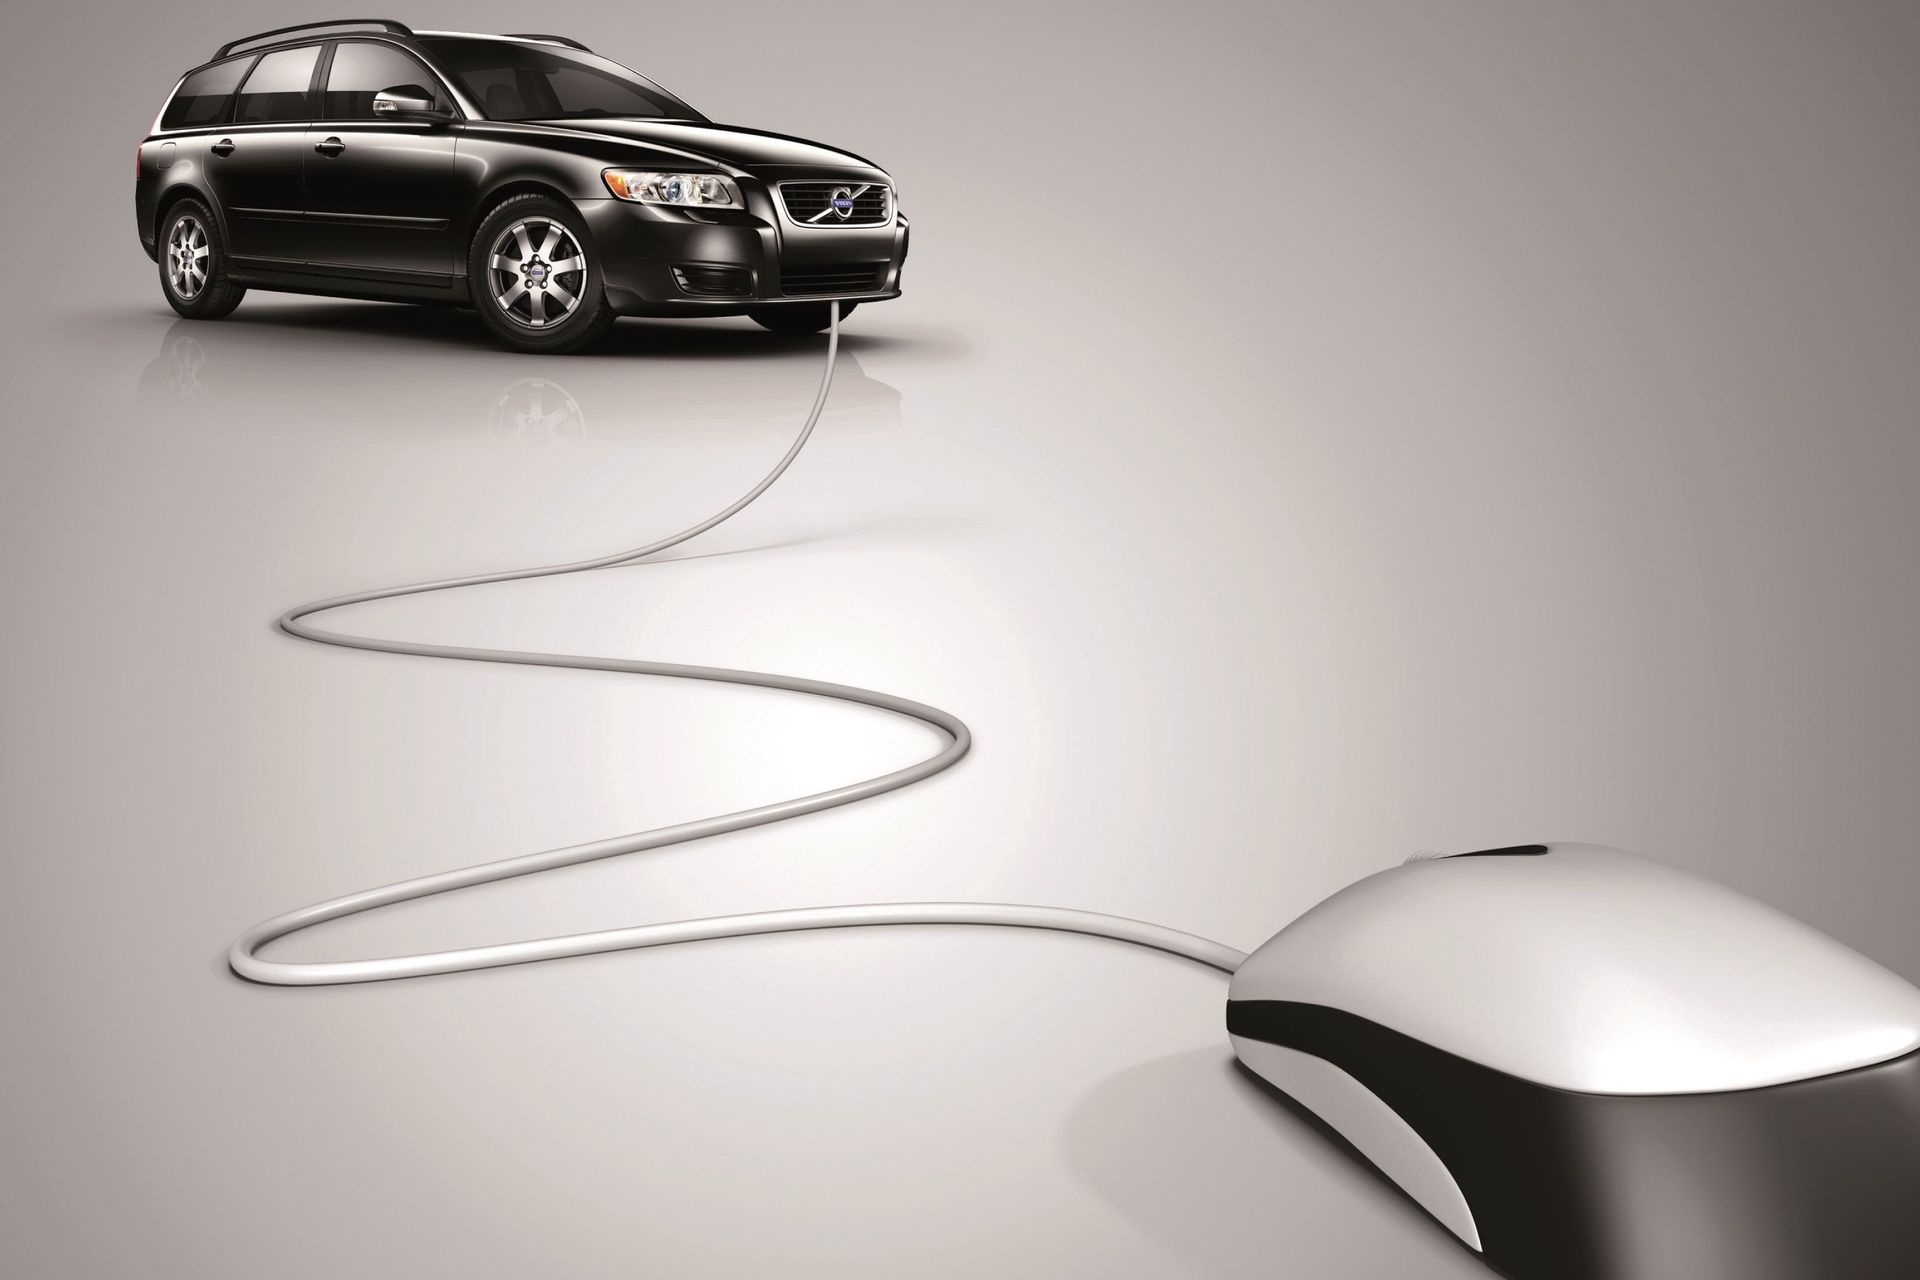 La Volvo Cars prevede l'aggiornamento gratuito del software dell'auto e prezzi certi tutto incluso